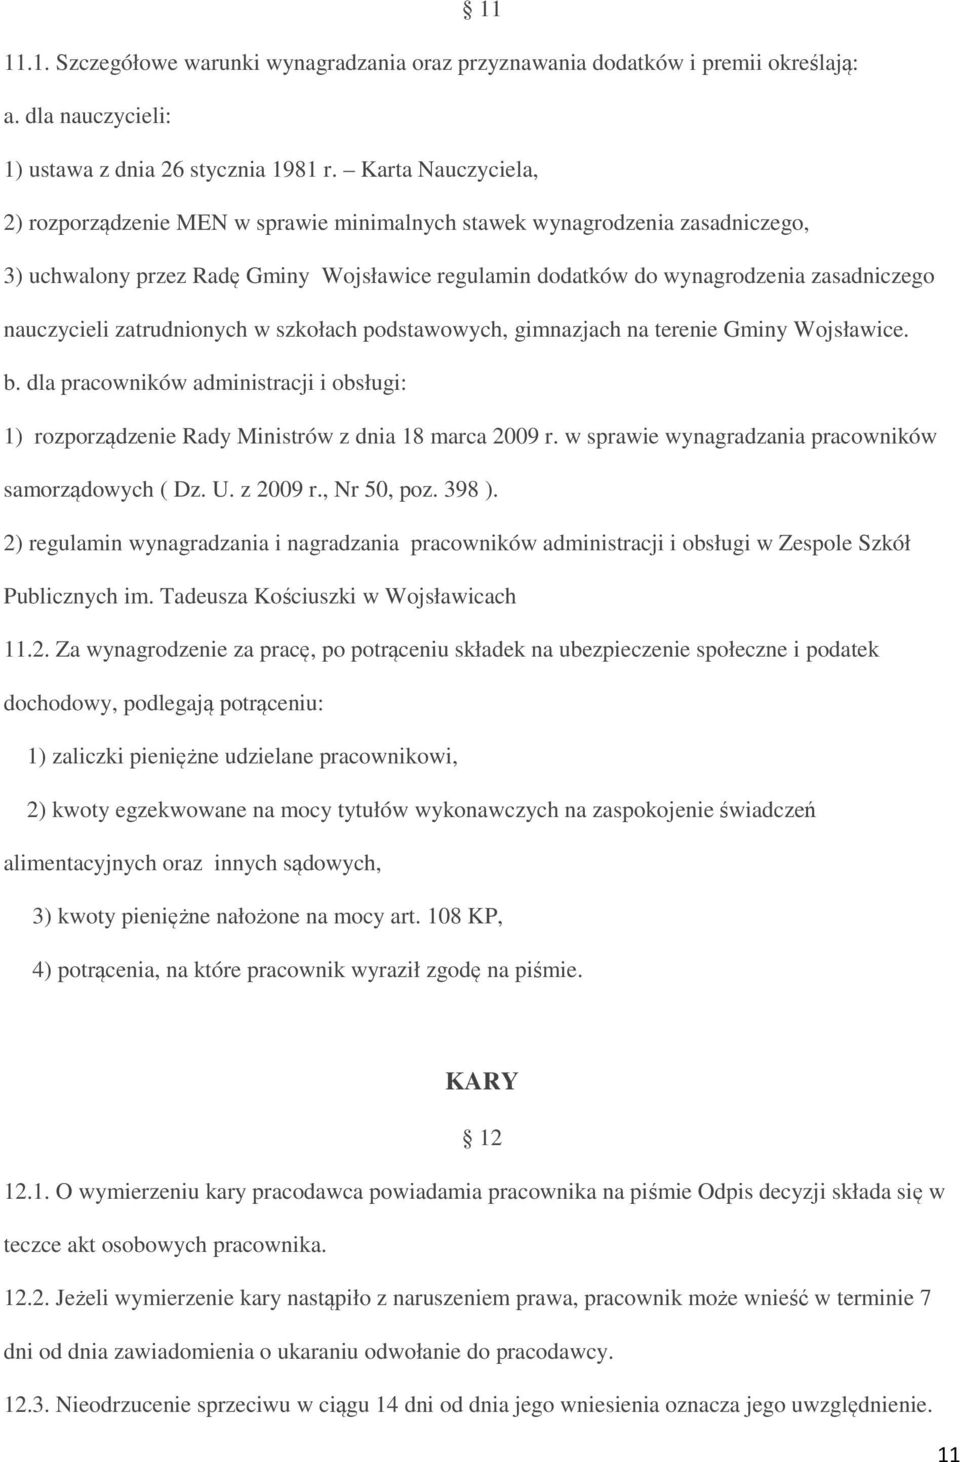 zatrudnionych w szkołach podstawowych, gimnazjach na terenie Gminy Wojsławice. b. dla pracowników administracji i obsługi: 1) rozporządzenie Rady Ministrów z dnia 18 marca 2009 r.